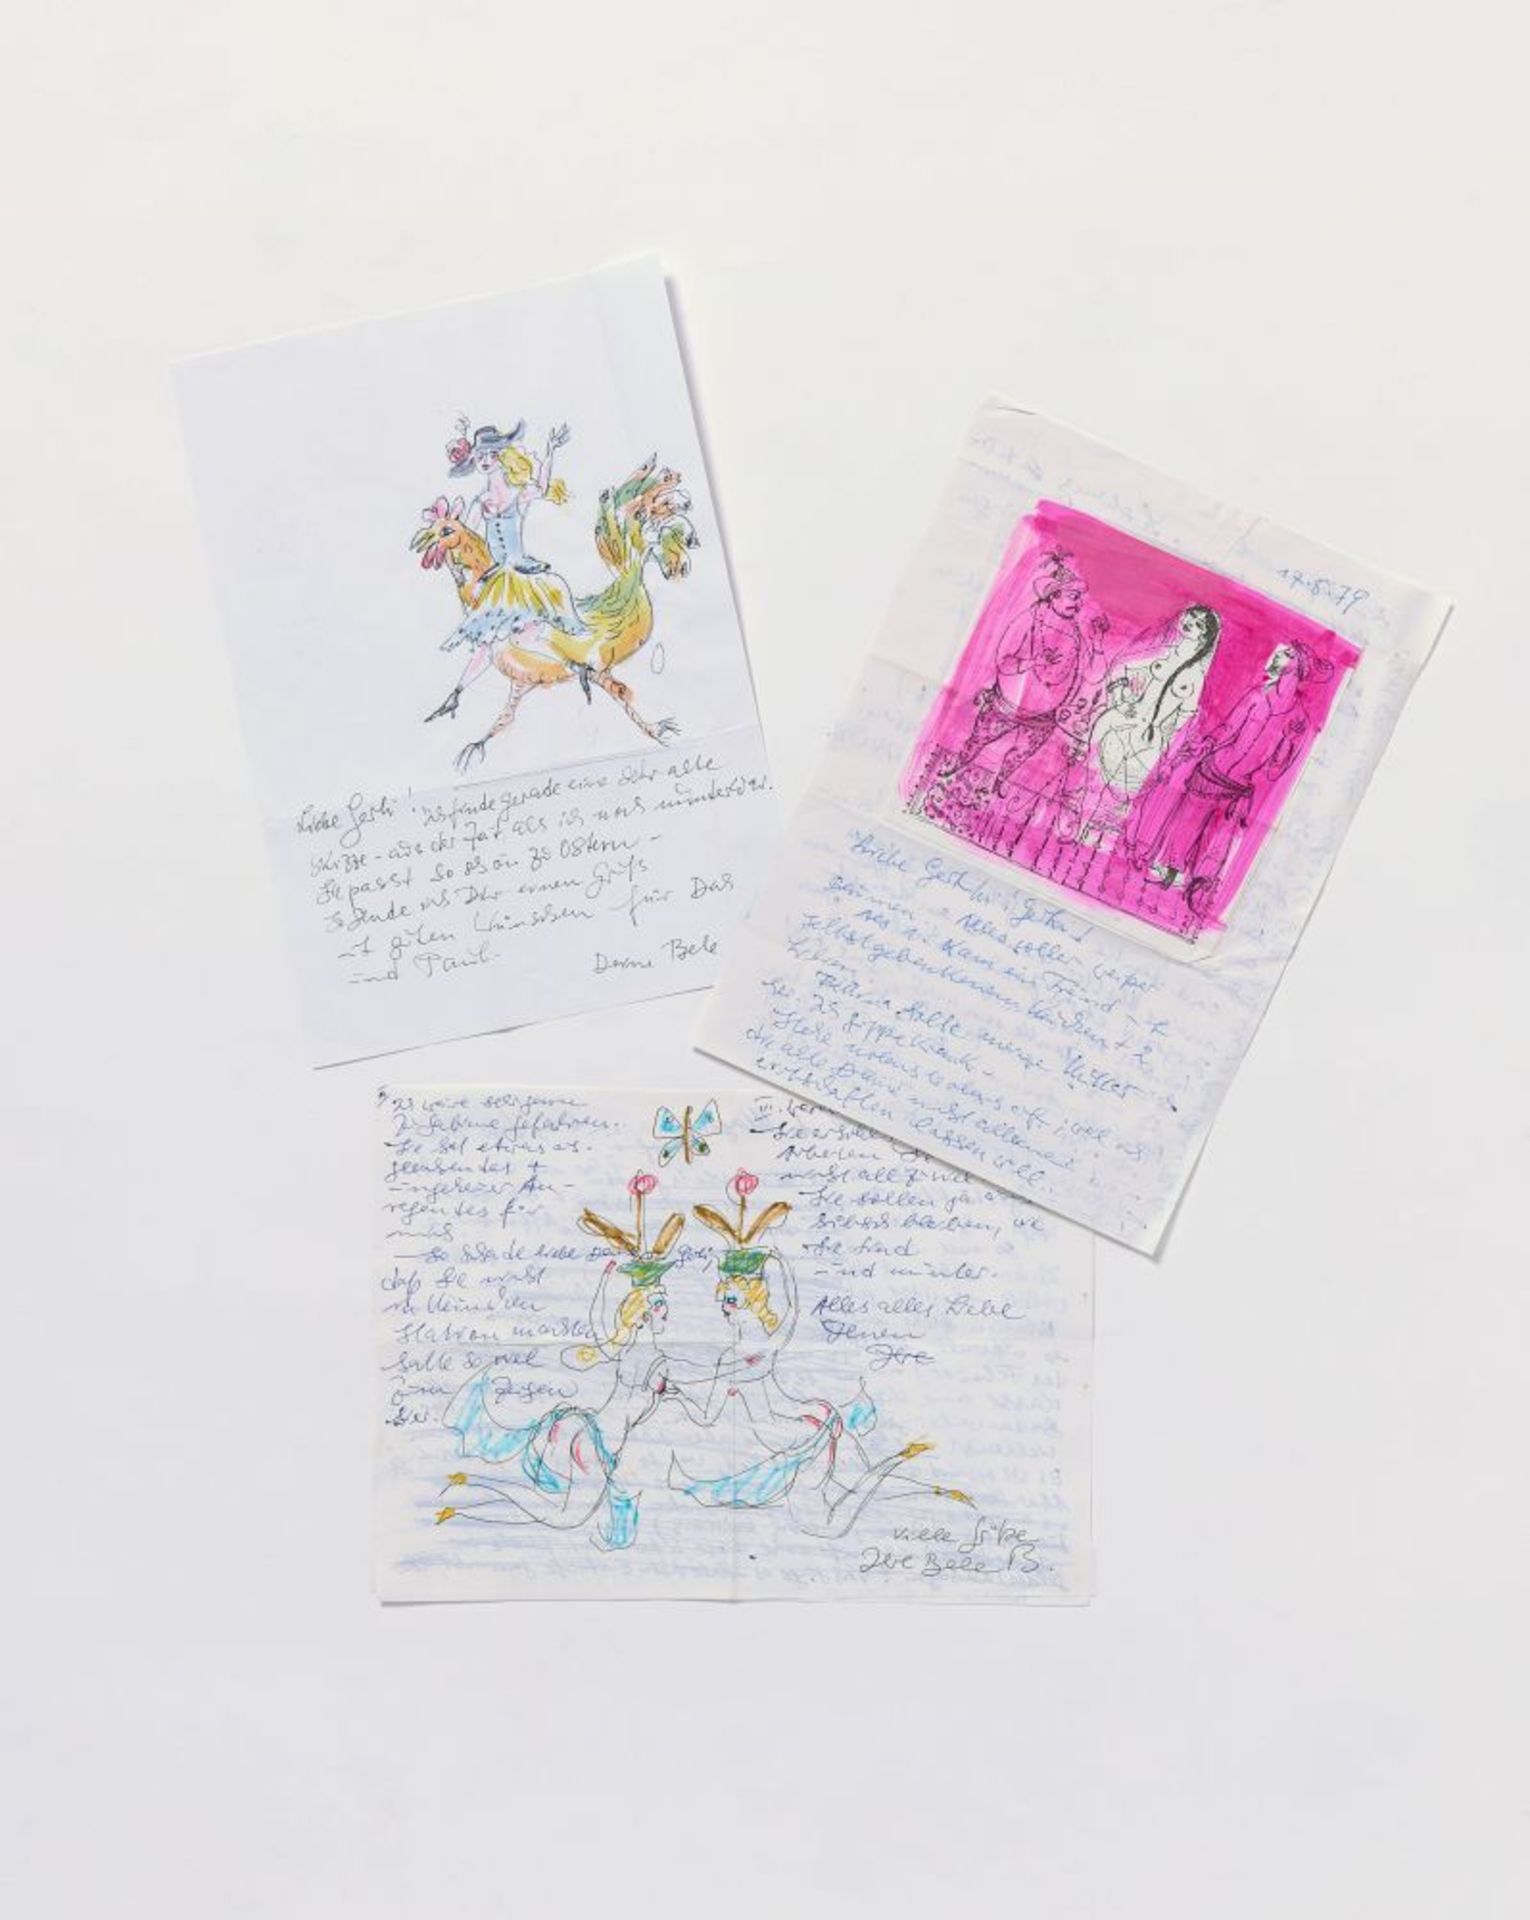 Bele Bachem, 40 eigh. Briefe, Karten, t. mit Zeichnungen. Von ca. 1974 bis um 2003. - An Gertrude Me - Image 7 of 12